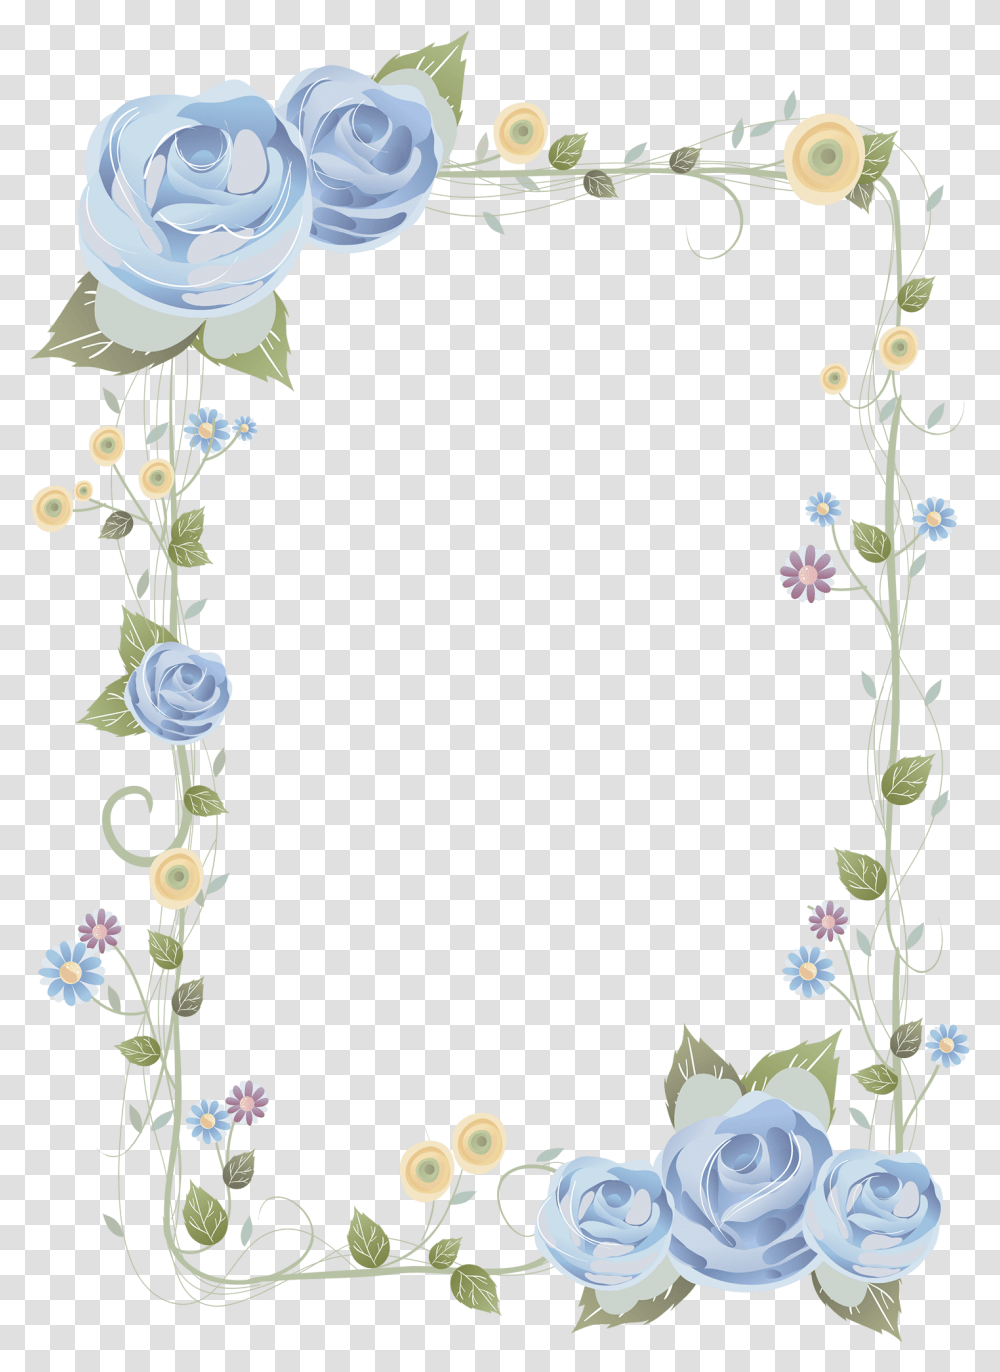 Blue Rose Frame Background Frame Flower Hd Frame Border Flower Backgrounds, Floral Design, Pattern, Graphics, Art Transparent Png